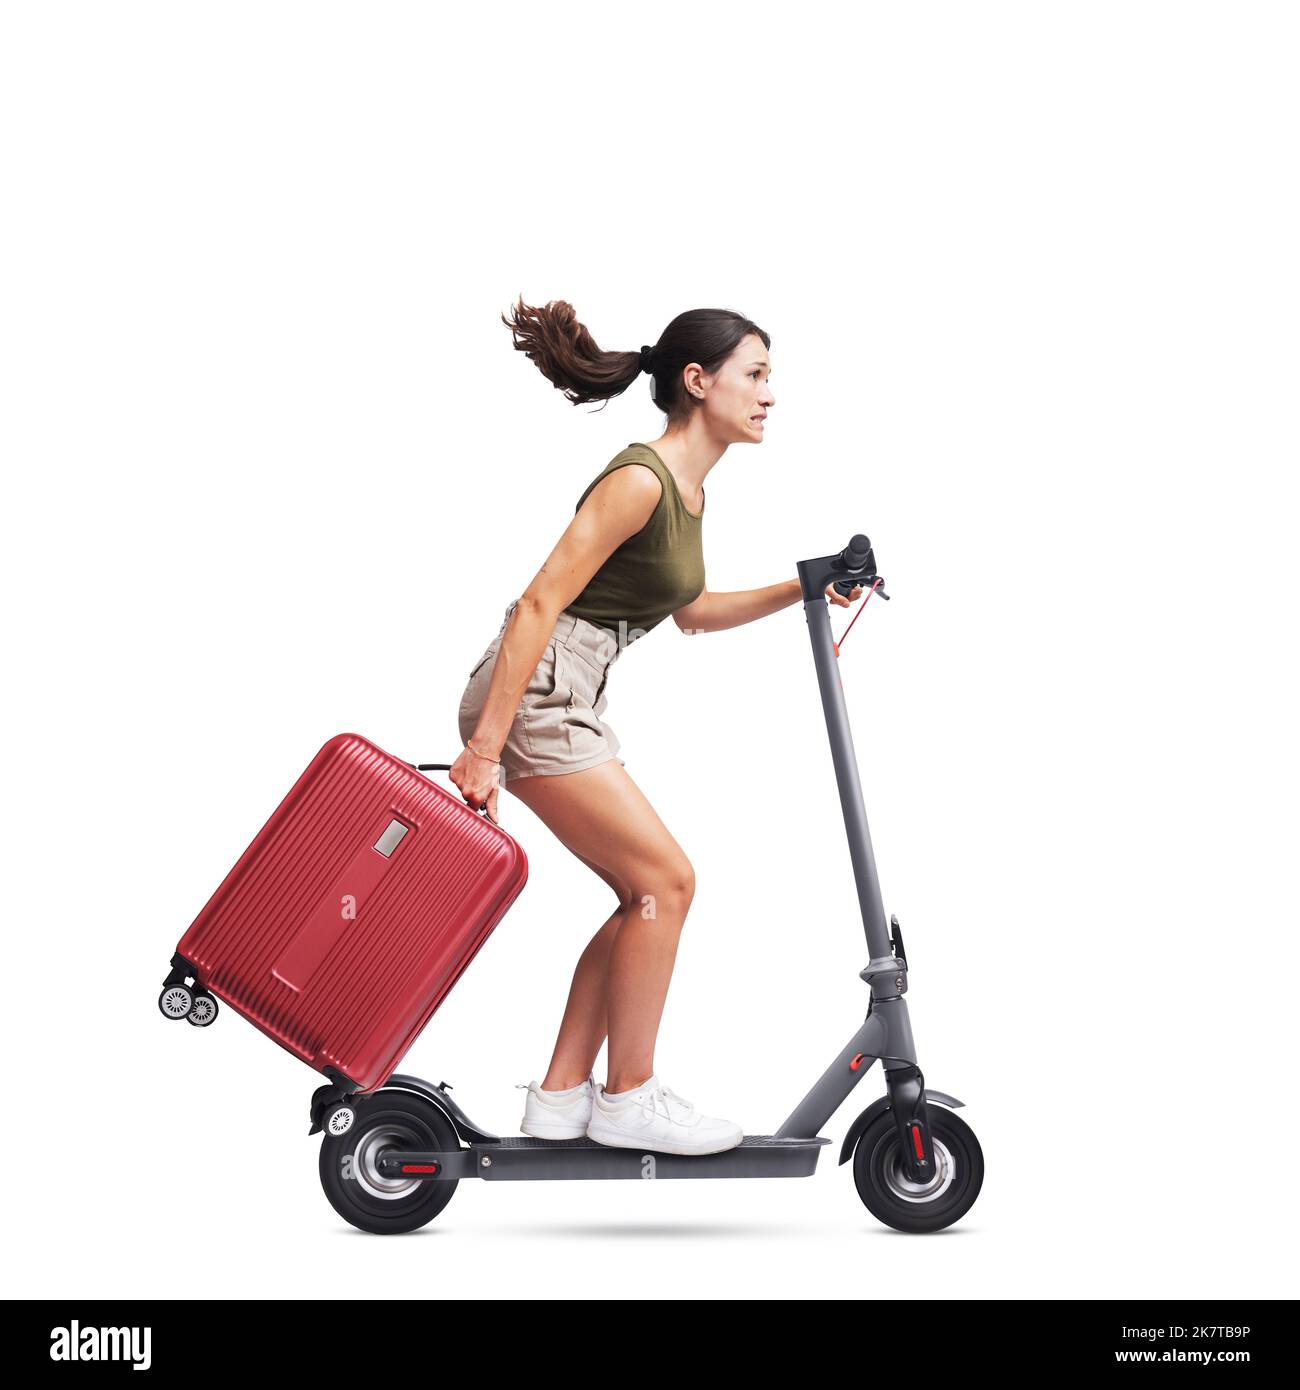 Junge Frau, die eine Trolley-Tasche trägt und einen schnellen Elektroroller fährt, ein Konzept für nachhaltige Mobilität, isoliert auf weißem Hintergrund Stockfoto